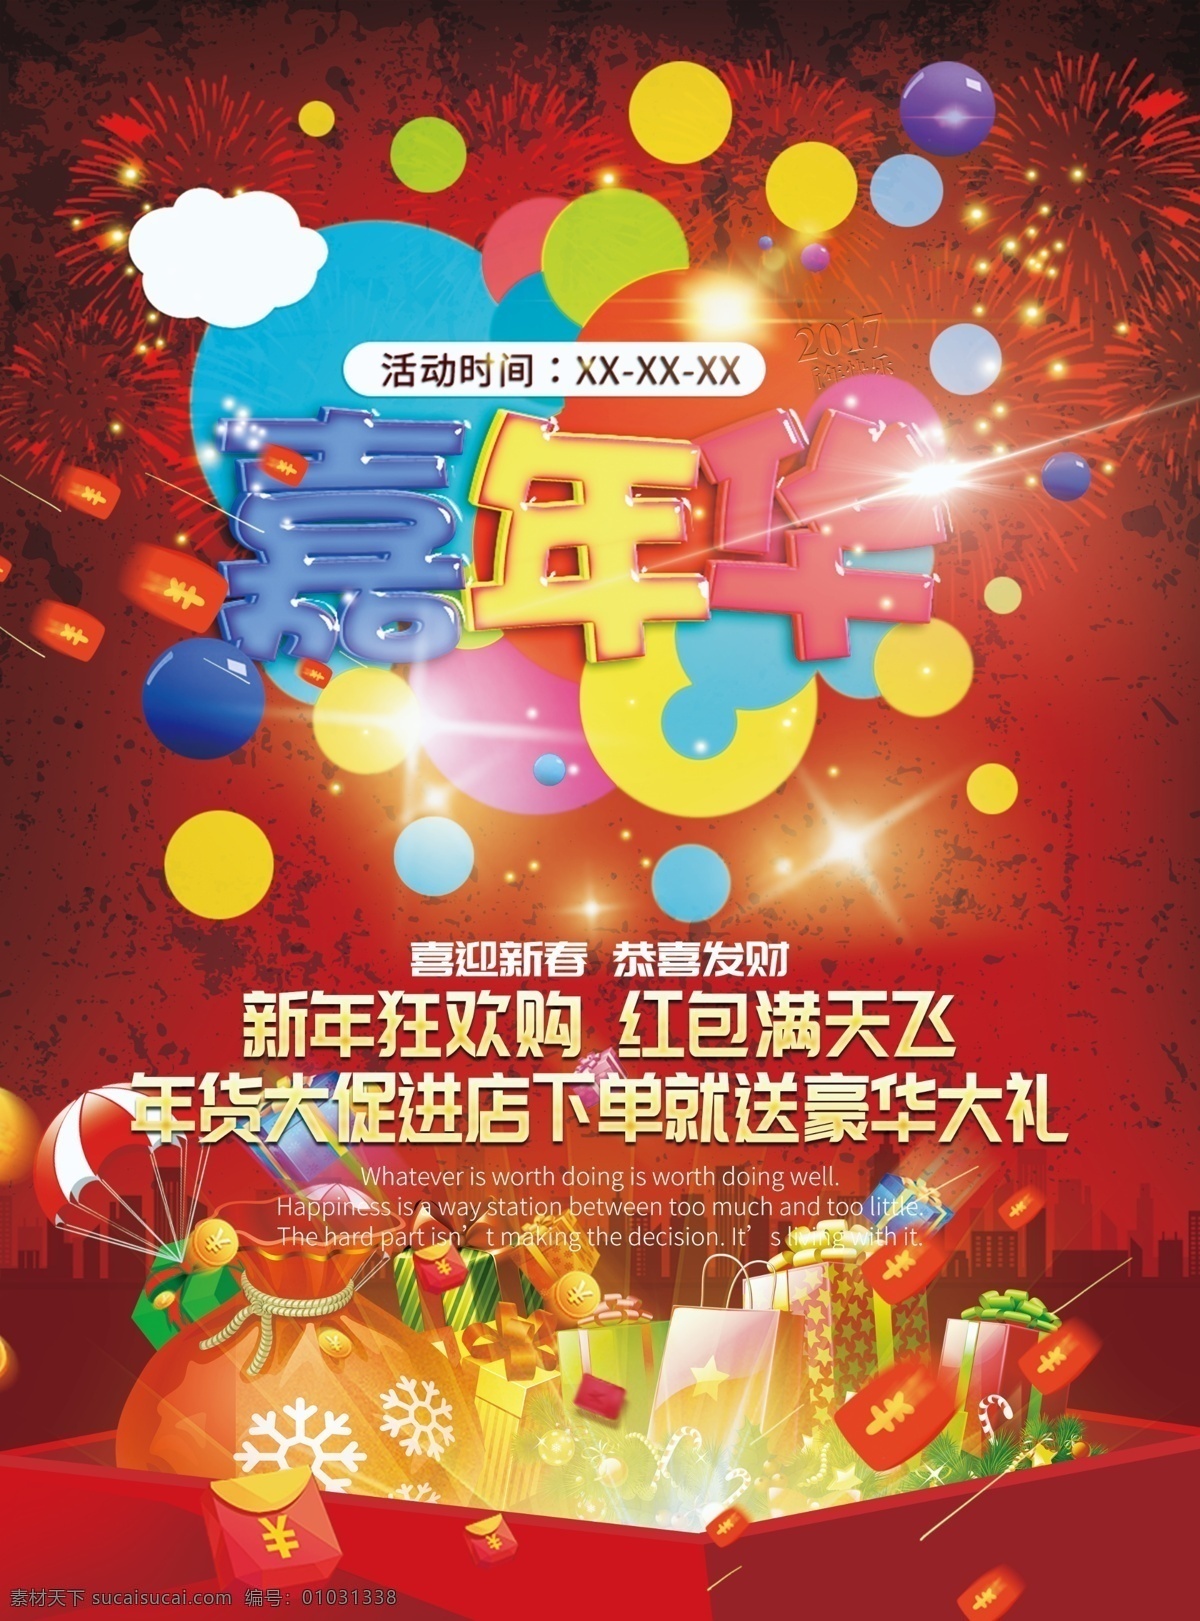 嘉年华 促销 海报 嘉年华海报 促销海报 气球 新年 红包 豪华大礼 礼物 红色背景 分层 300分辨率